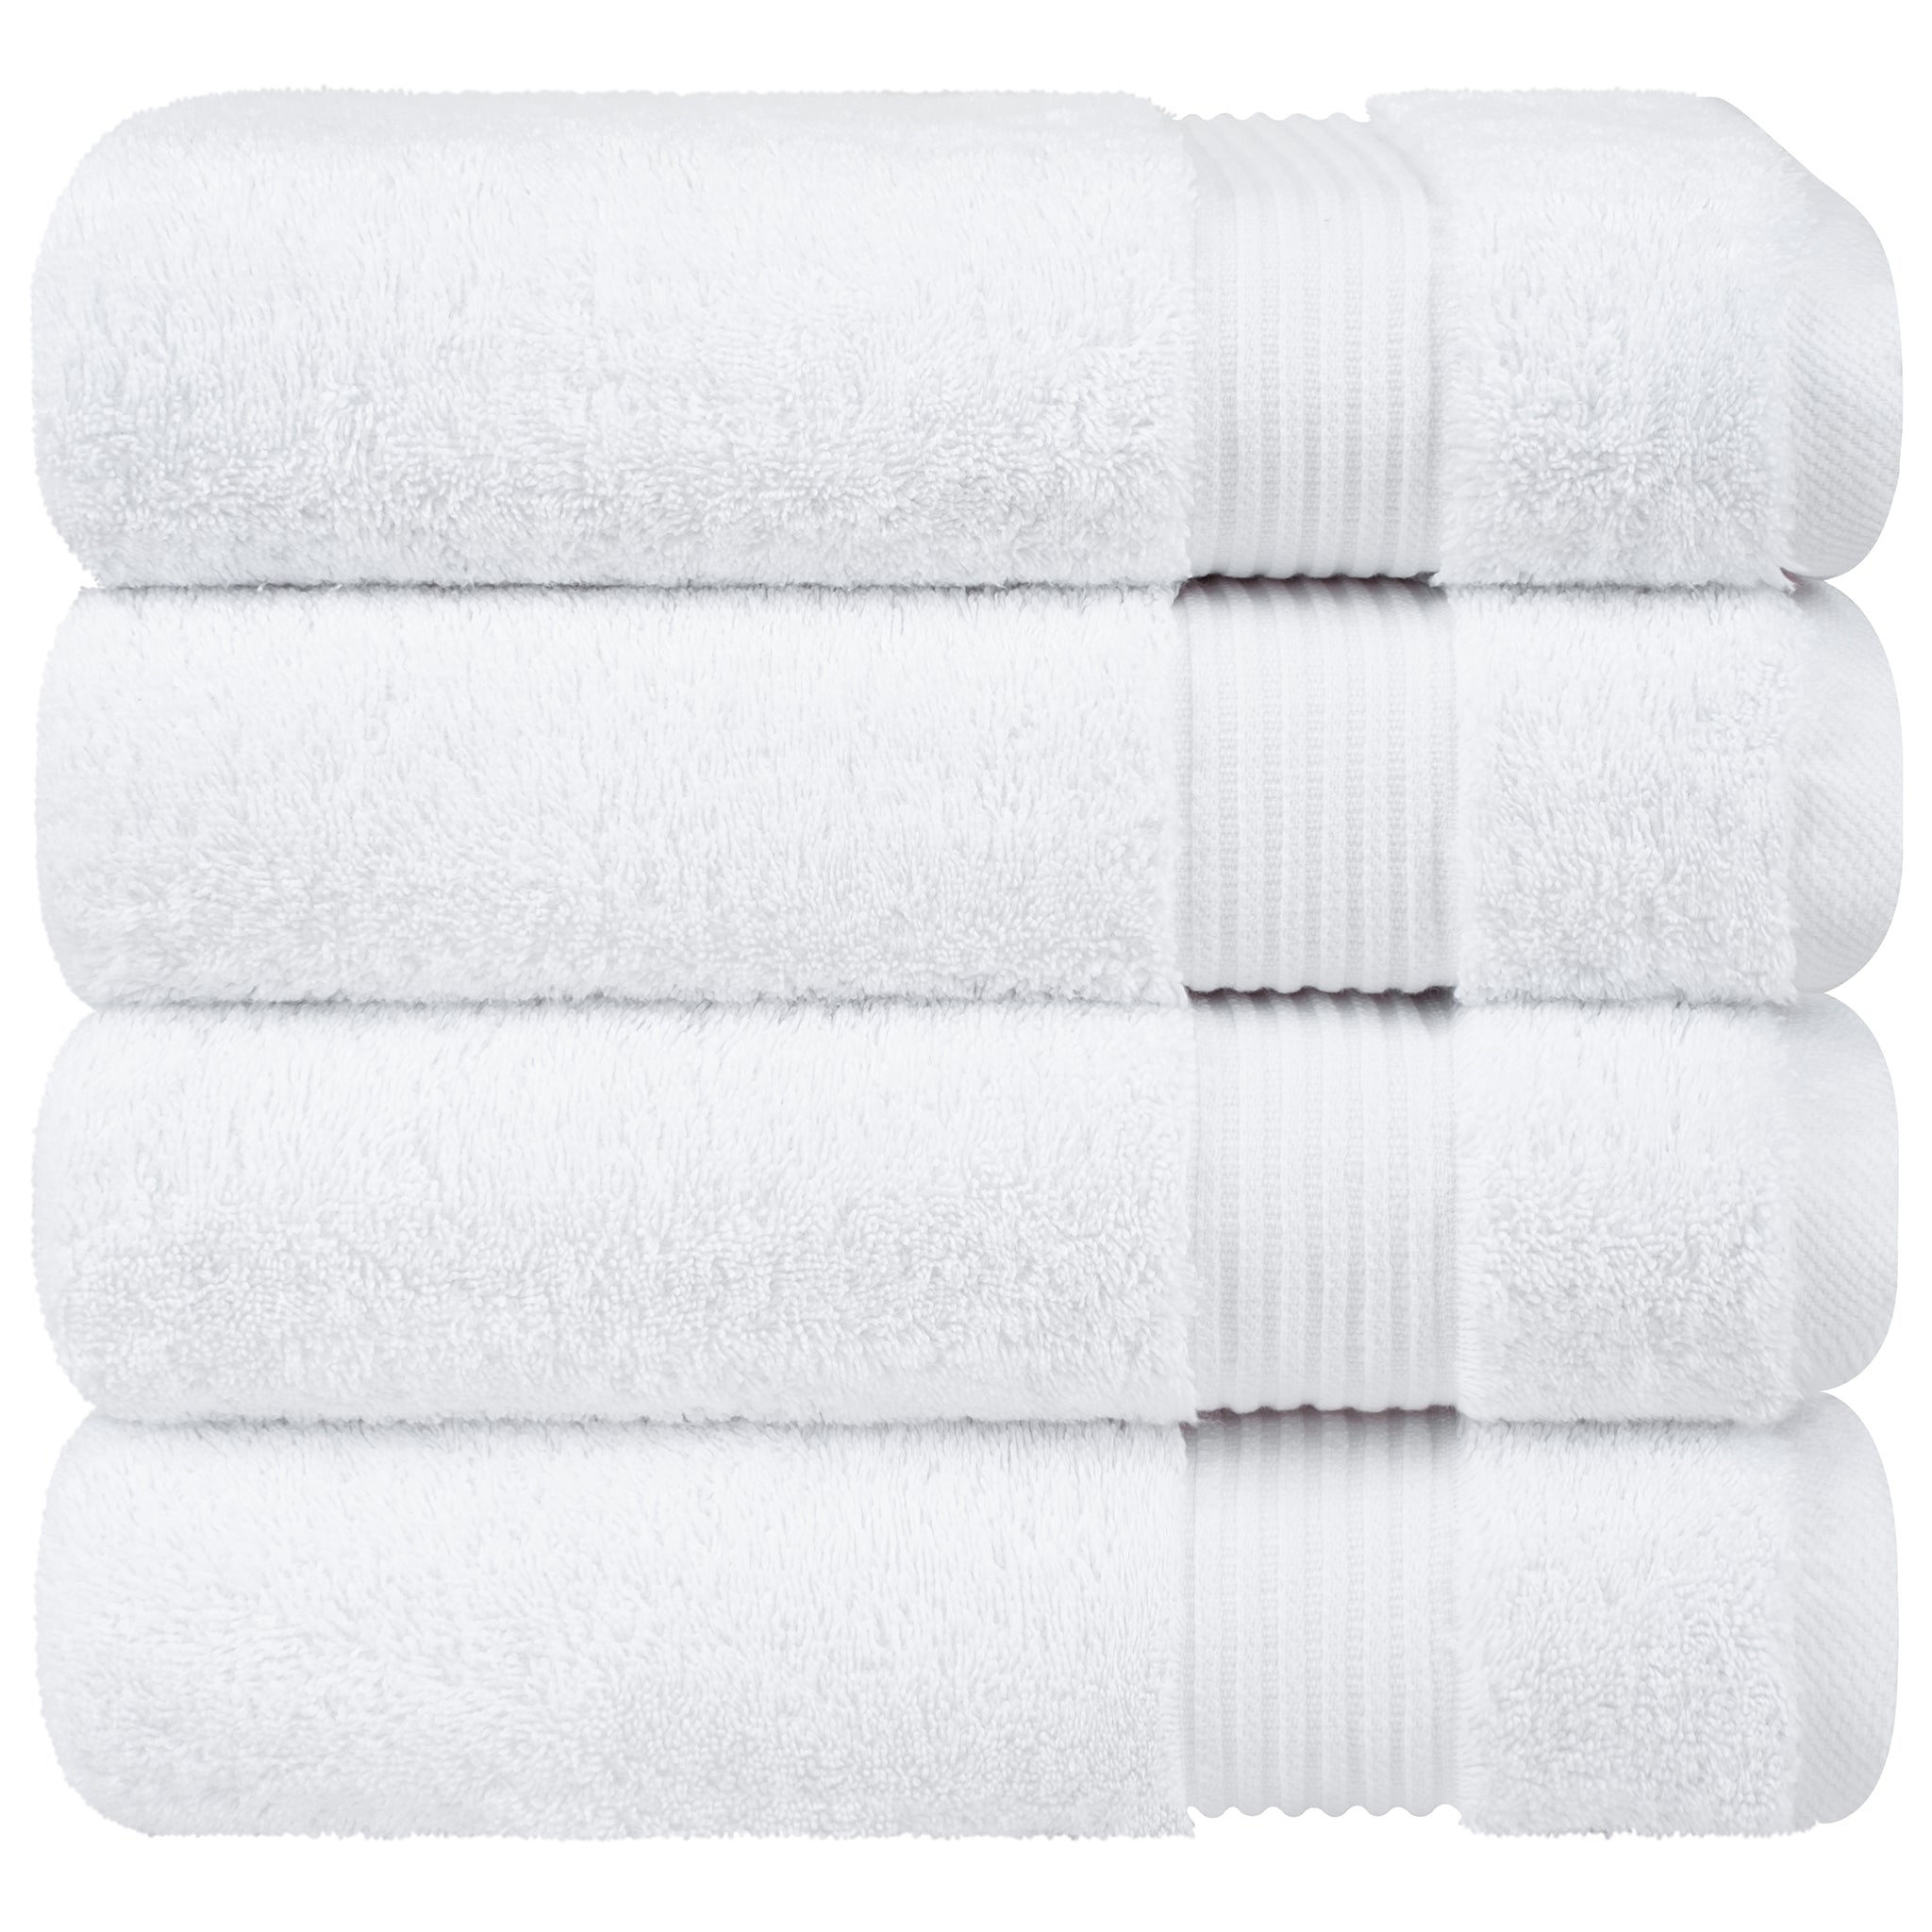 American Soft Linen Bekos 100% Cotton Turkish Towels, 4 Piece Bath Towel Set -turquoise-white-06